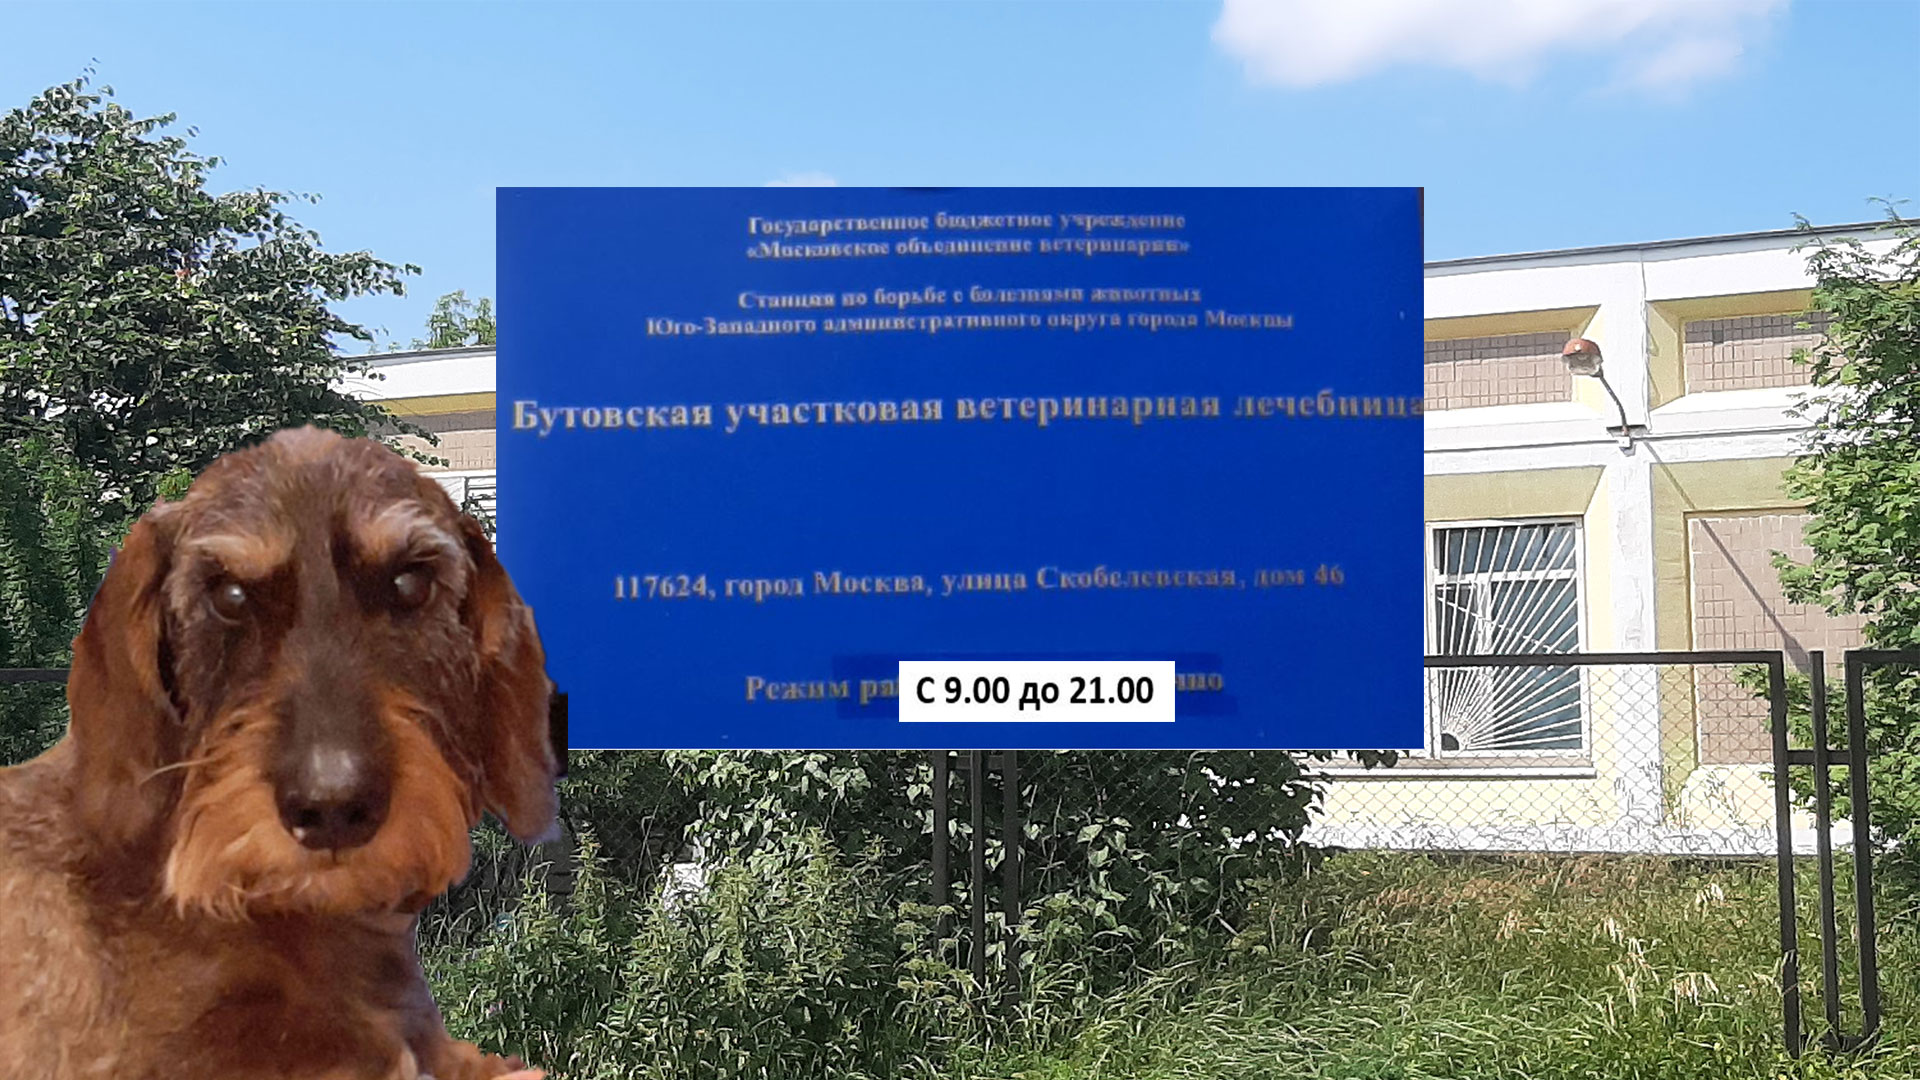 Табличка с названием Бутовской участковой ветеринарной лечебной клиники, жесткошерстная такса автора, внешний вид клиники